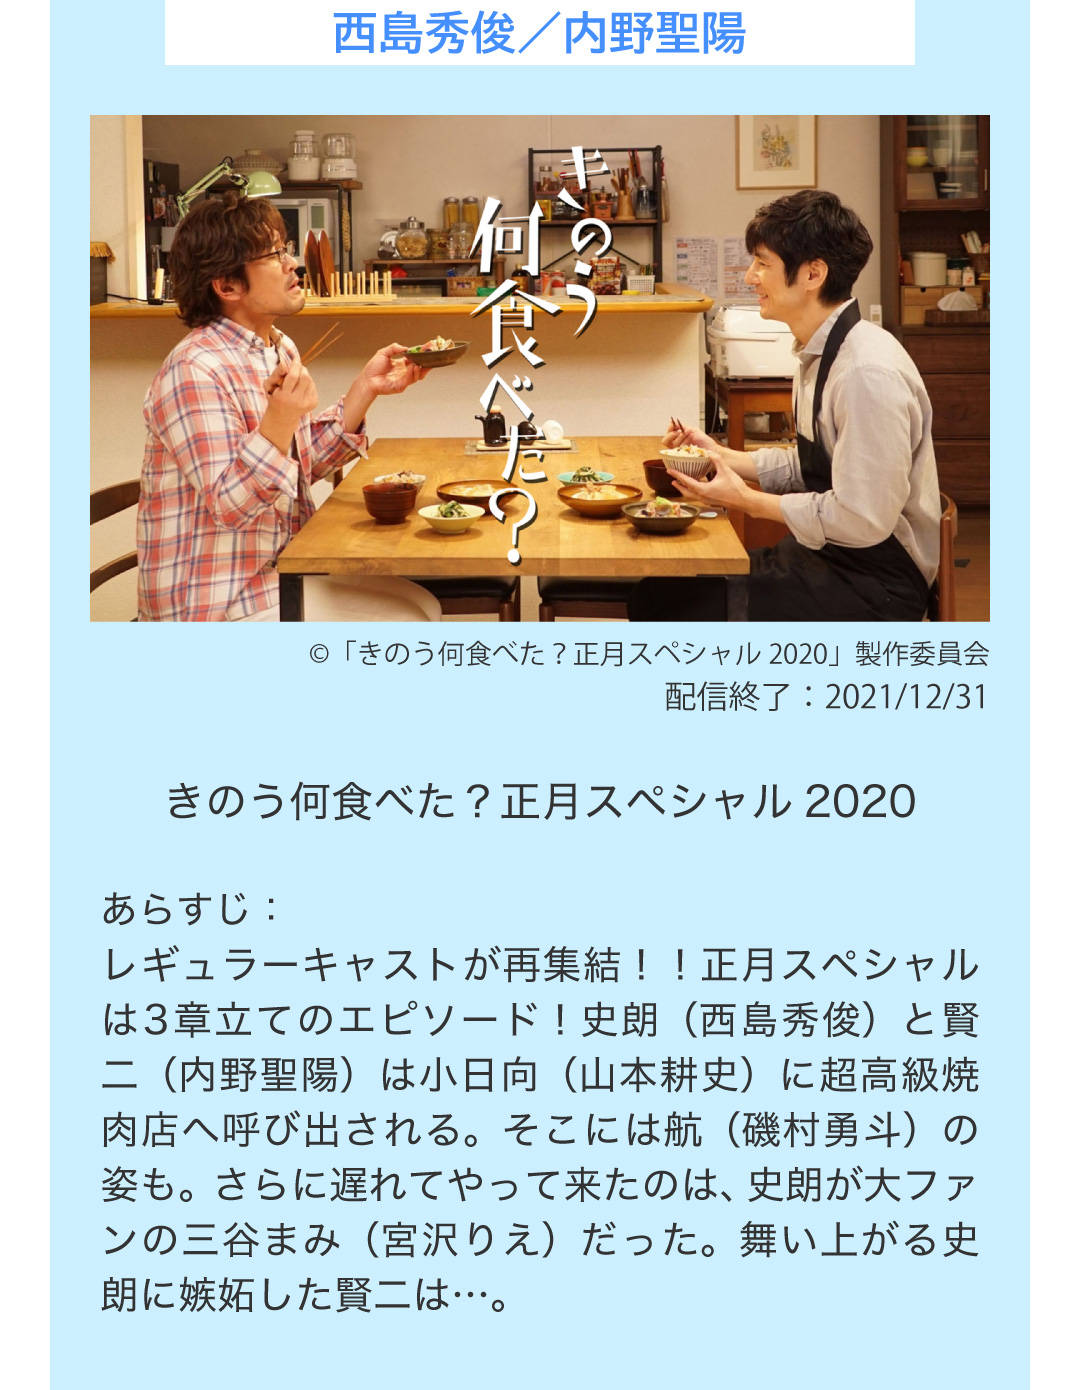 西島秀俊 内野聖陽 きのう何食べた? 正月スペシャル 2020